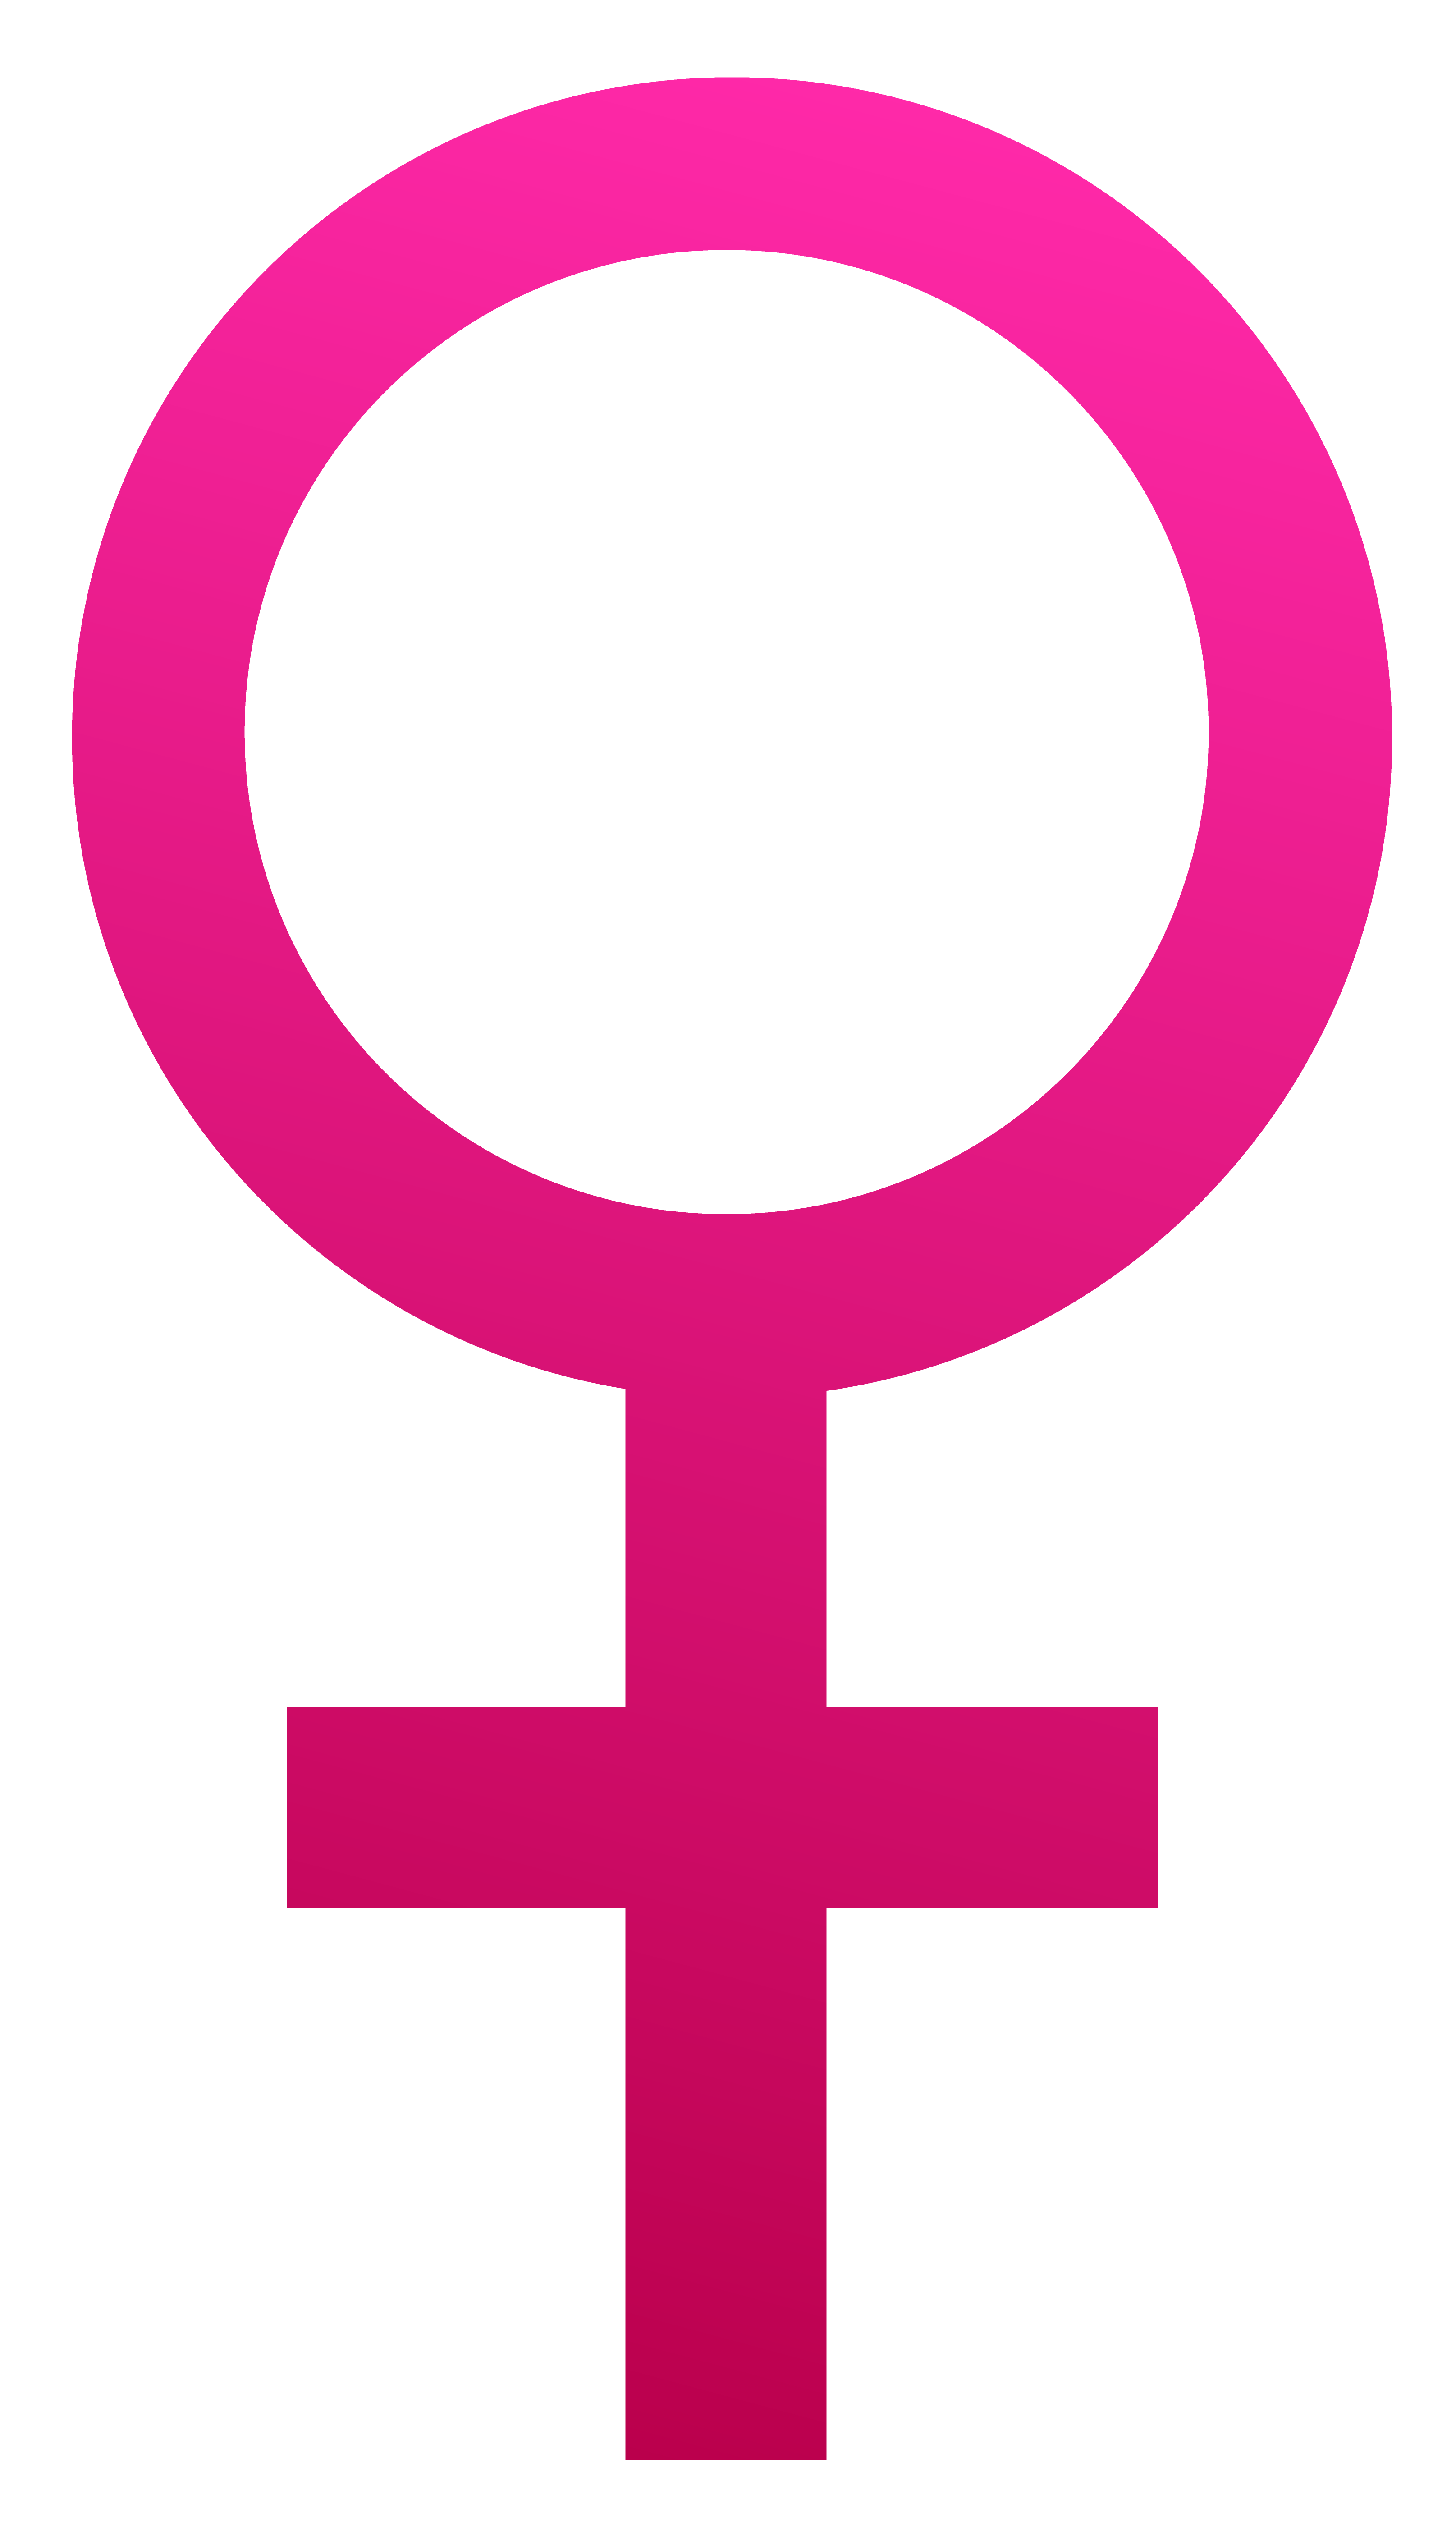 Clipart female symbol